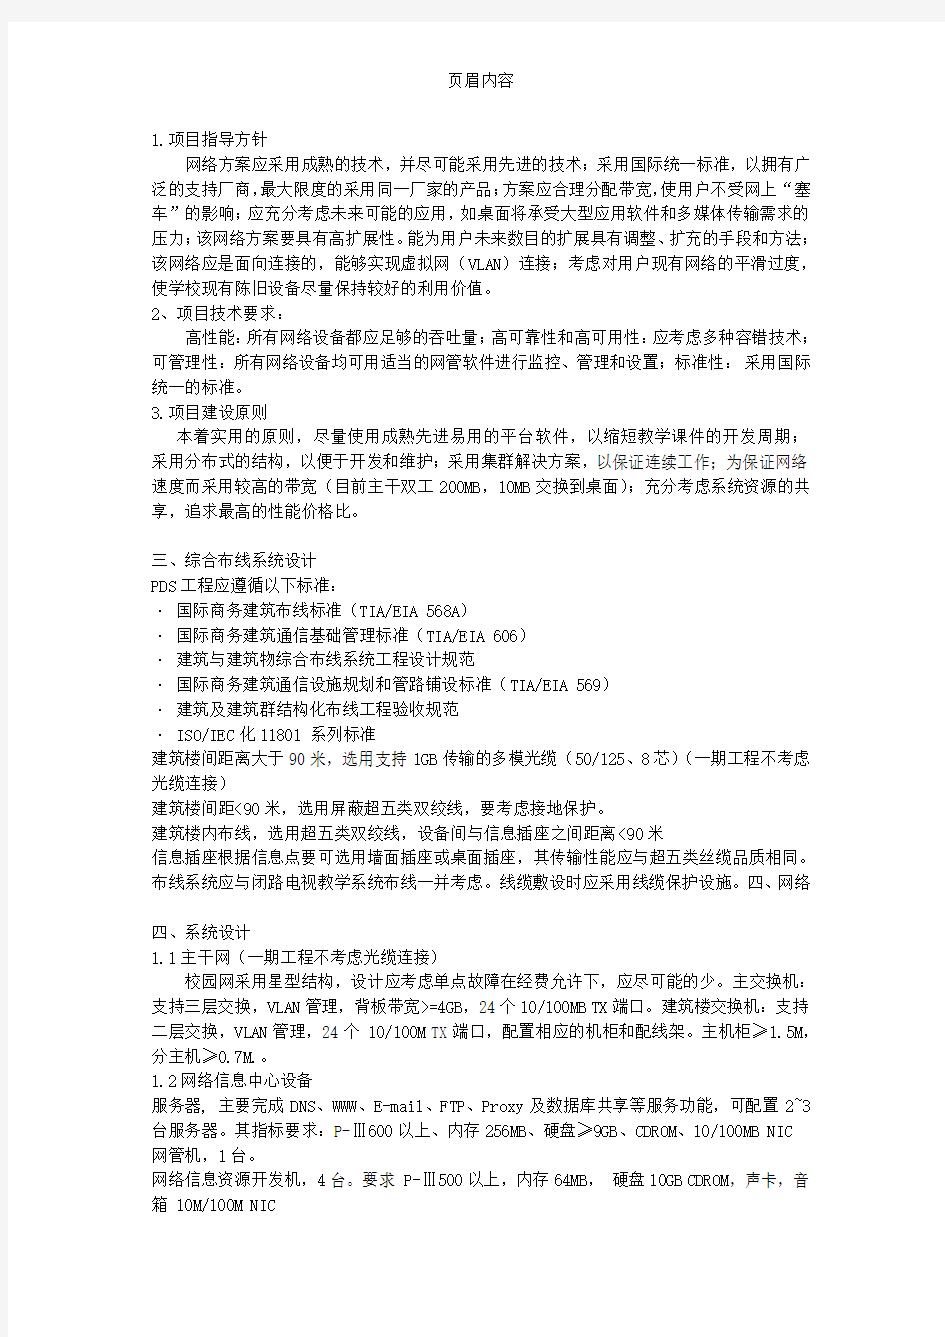 南京信息工程大学滨江学院校园网络工程二期投标书